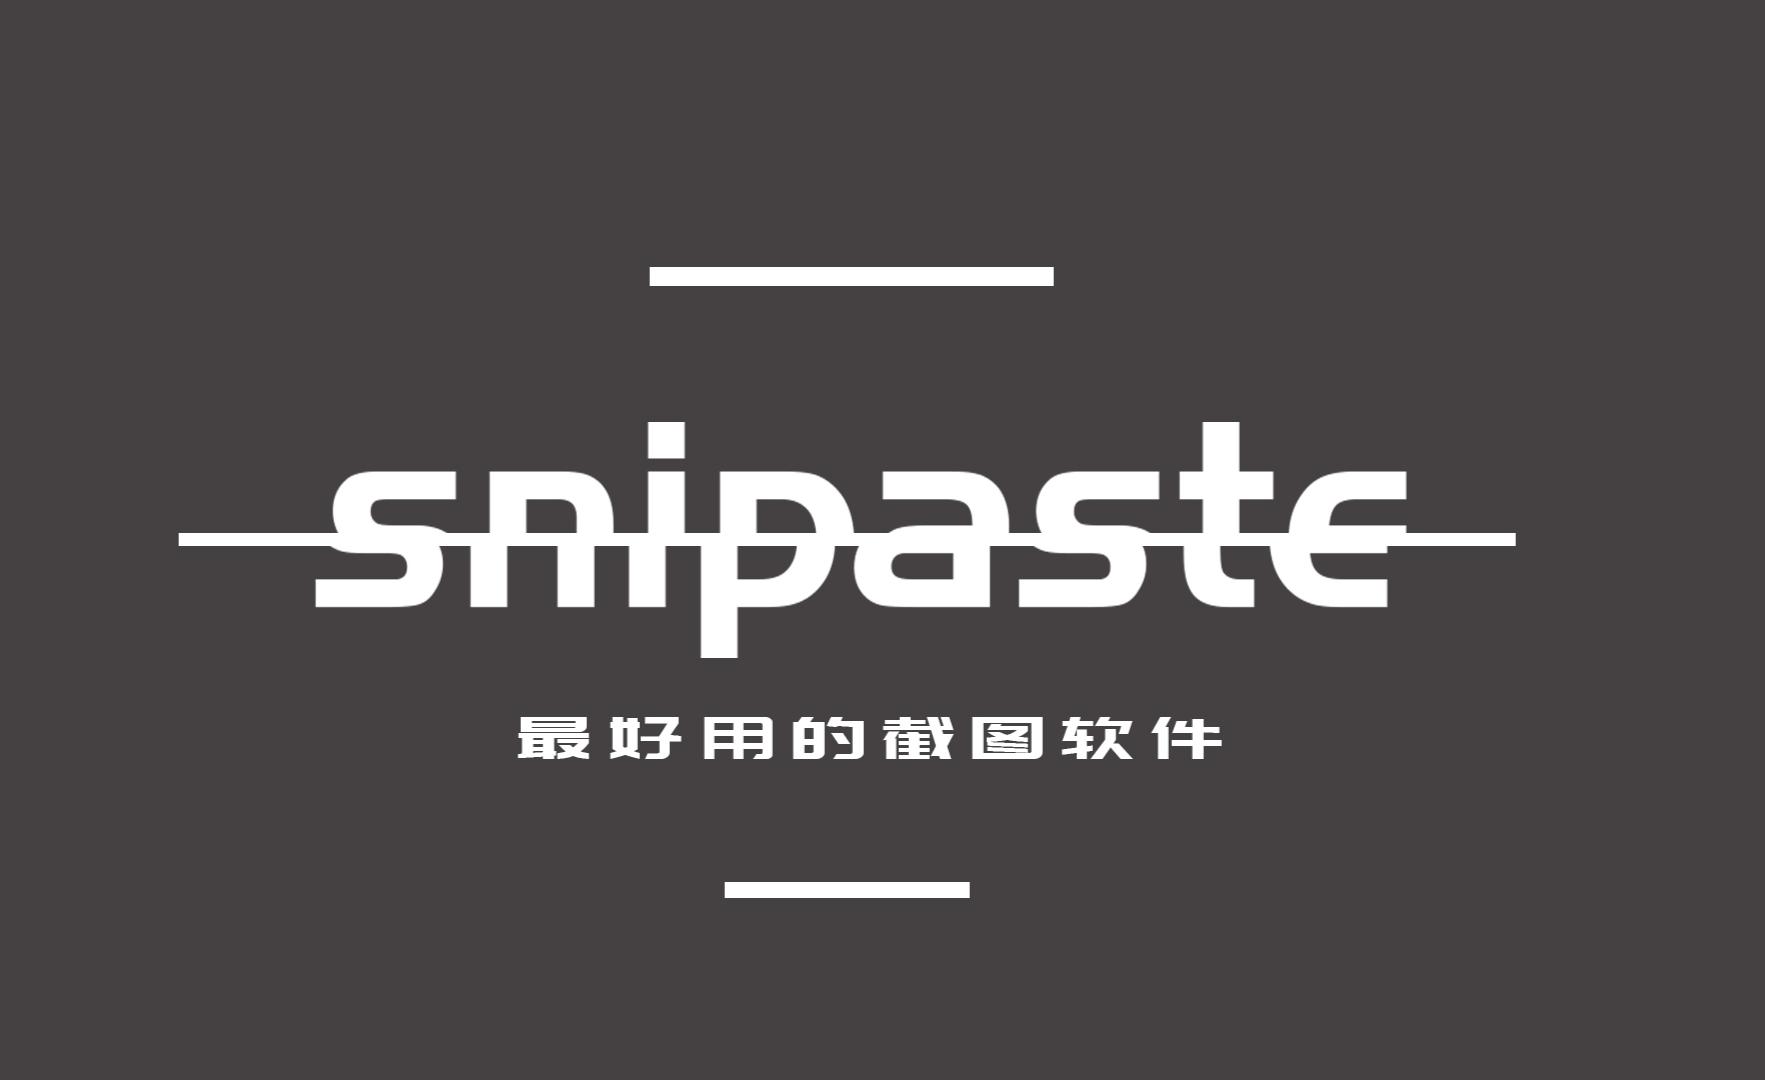 snipaste截图工具-淇云博客-专注于IT技术分享